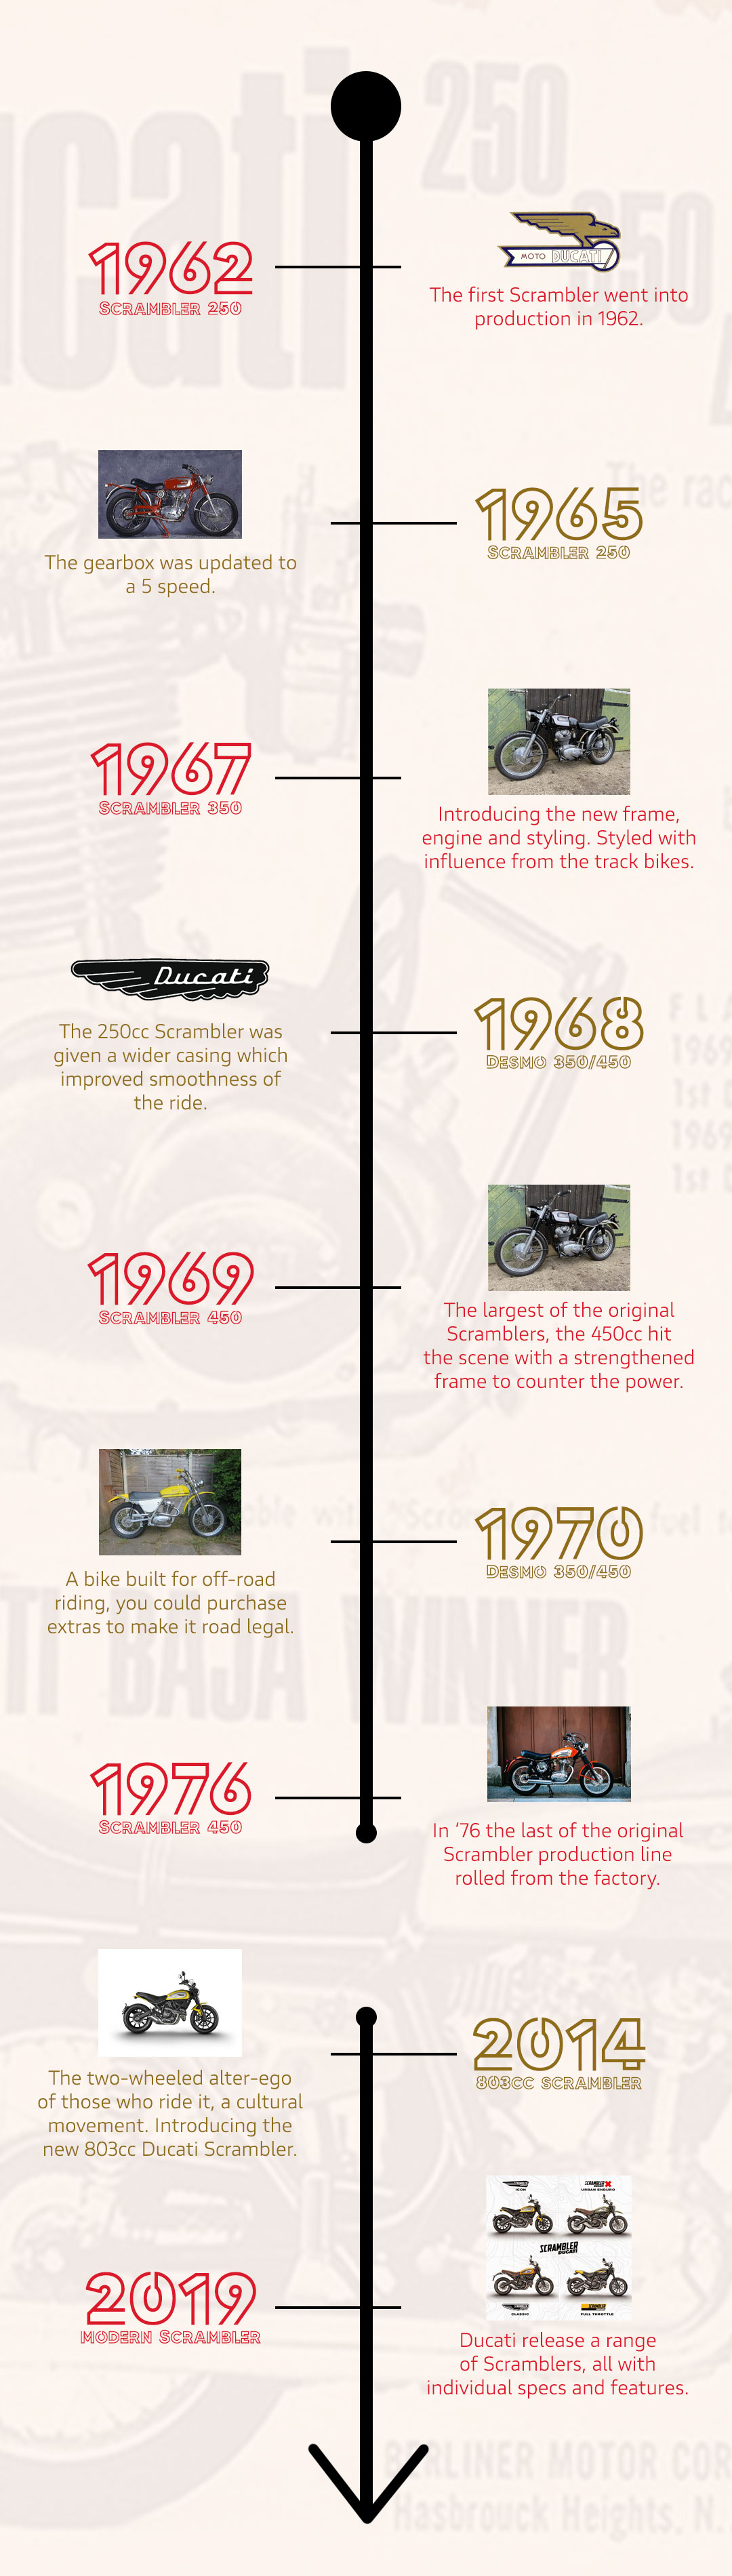 Ducati Scrambler Timeline from 1962